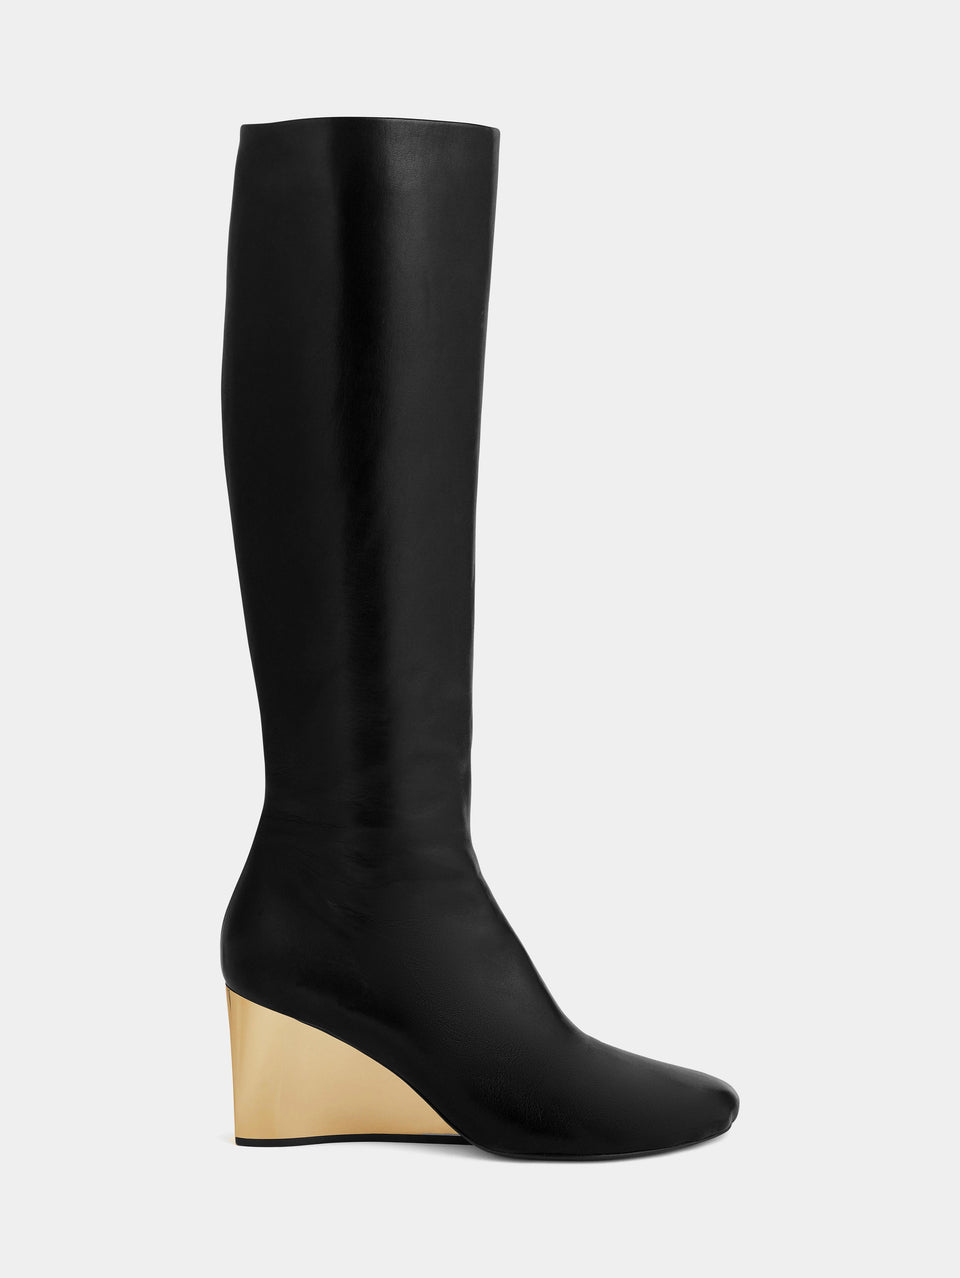 Golden heel Knee-High leather Boots | Rabanne